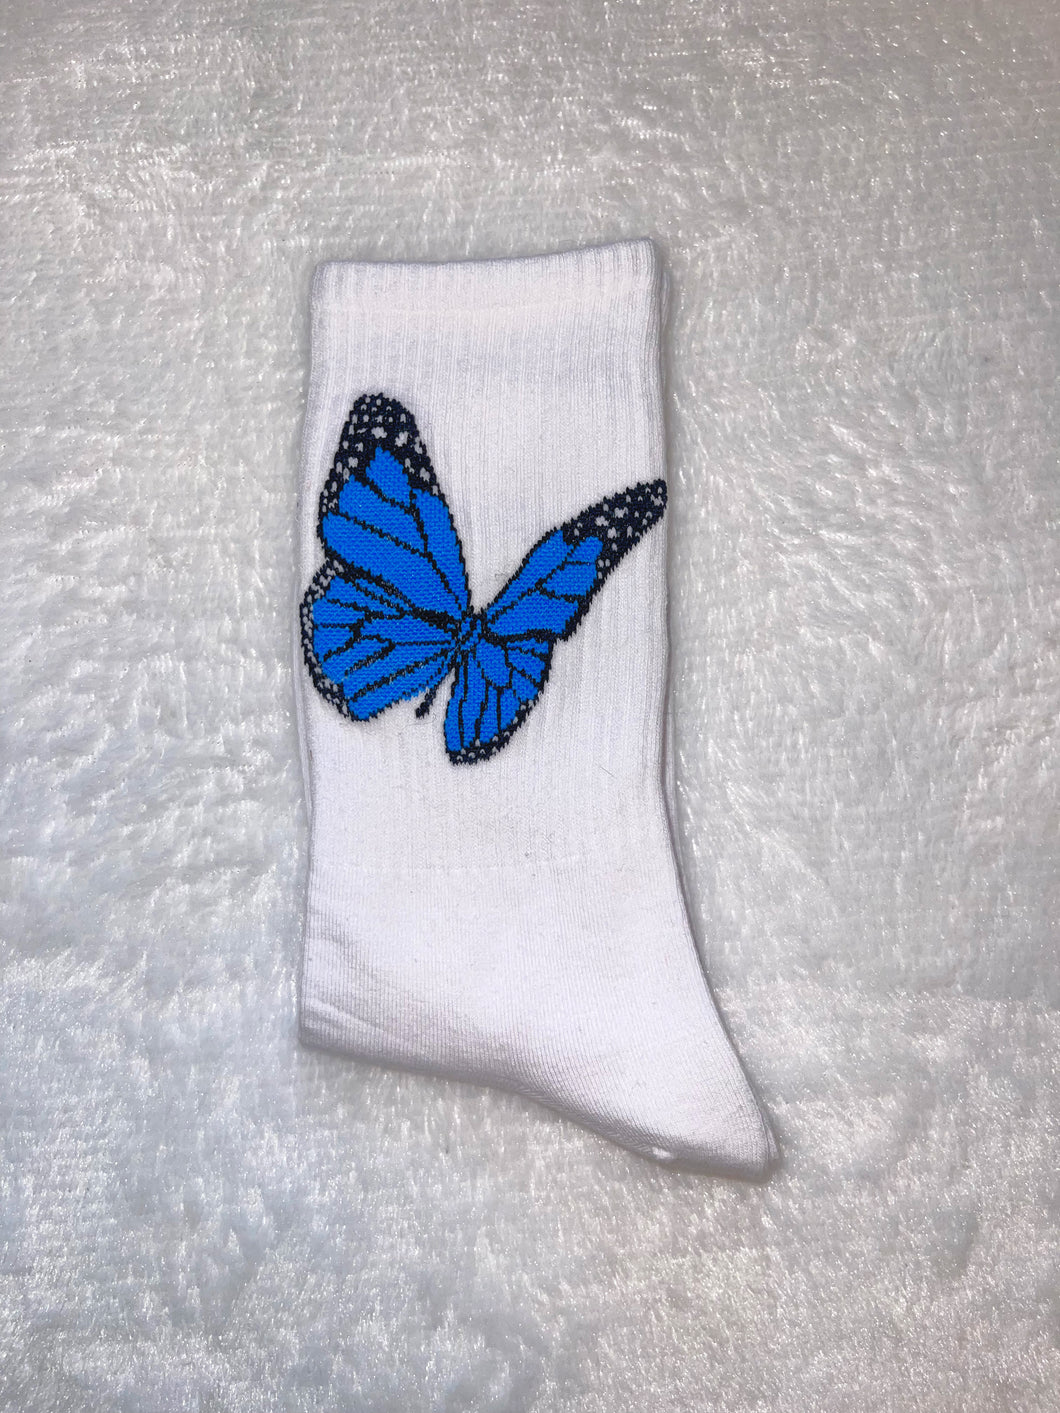 Blue Butterfly Socks